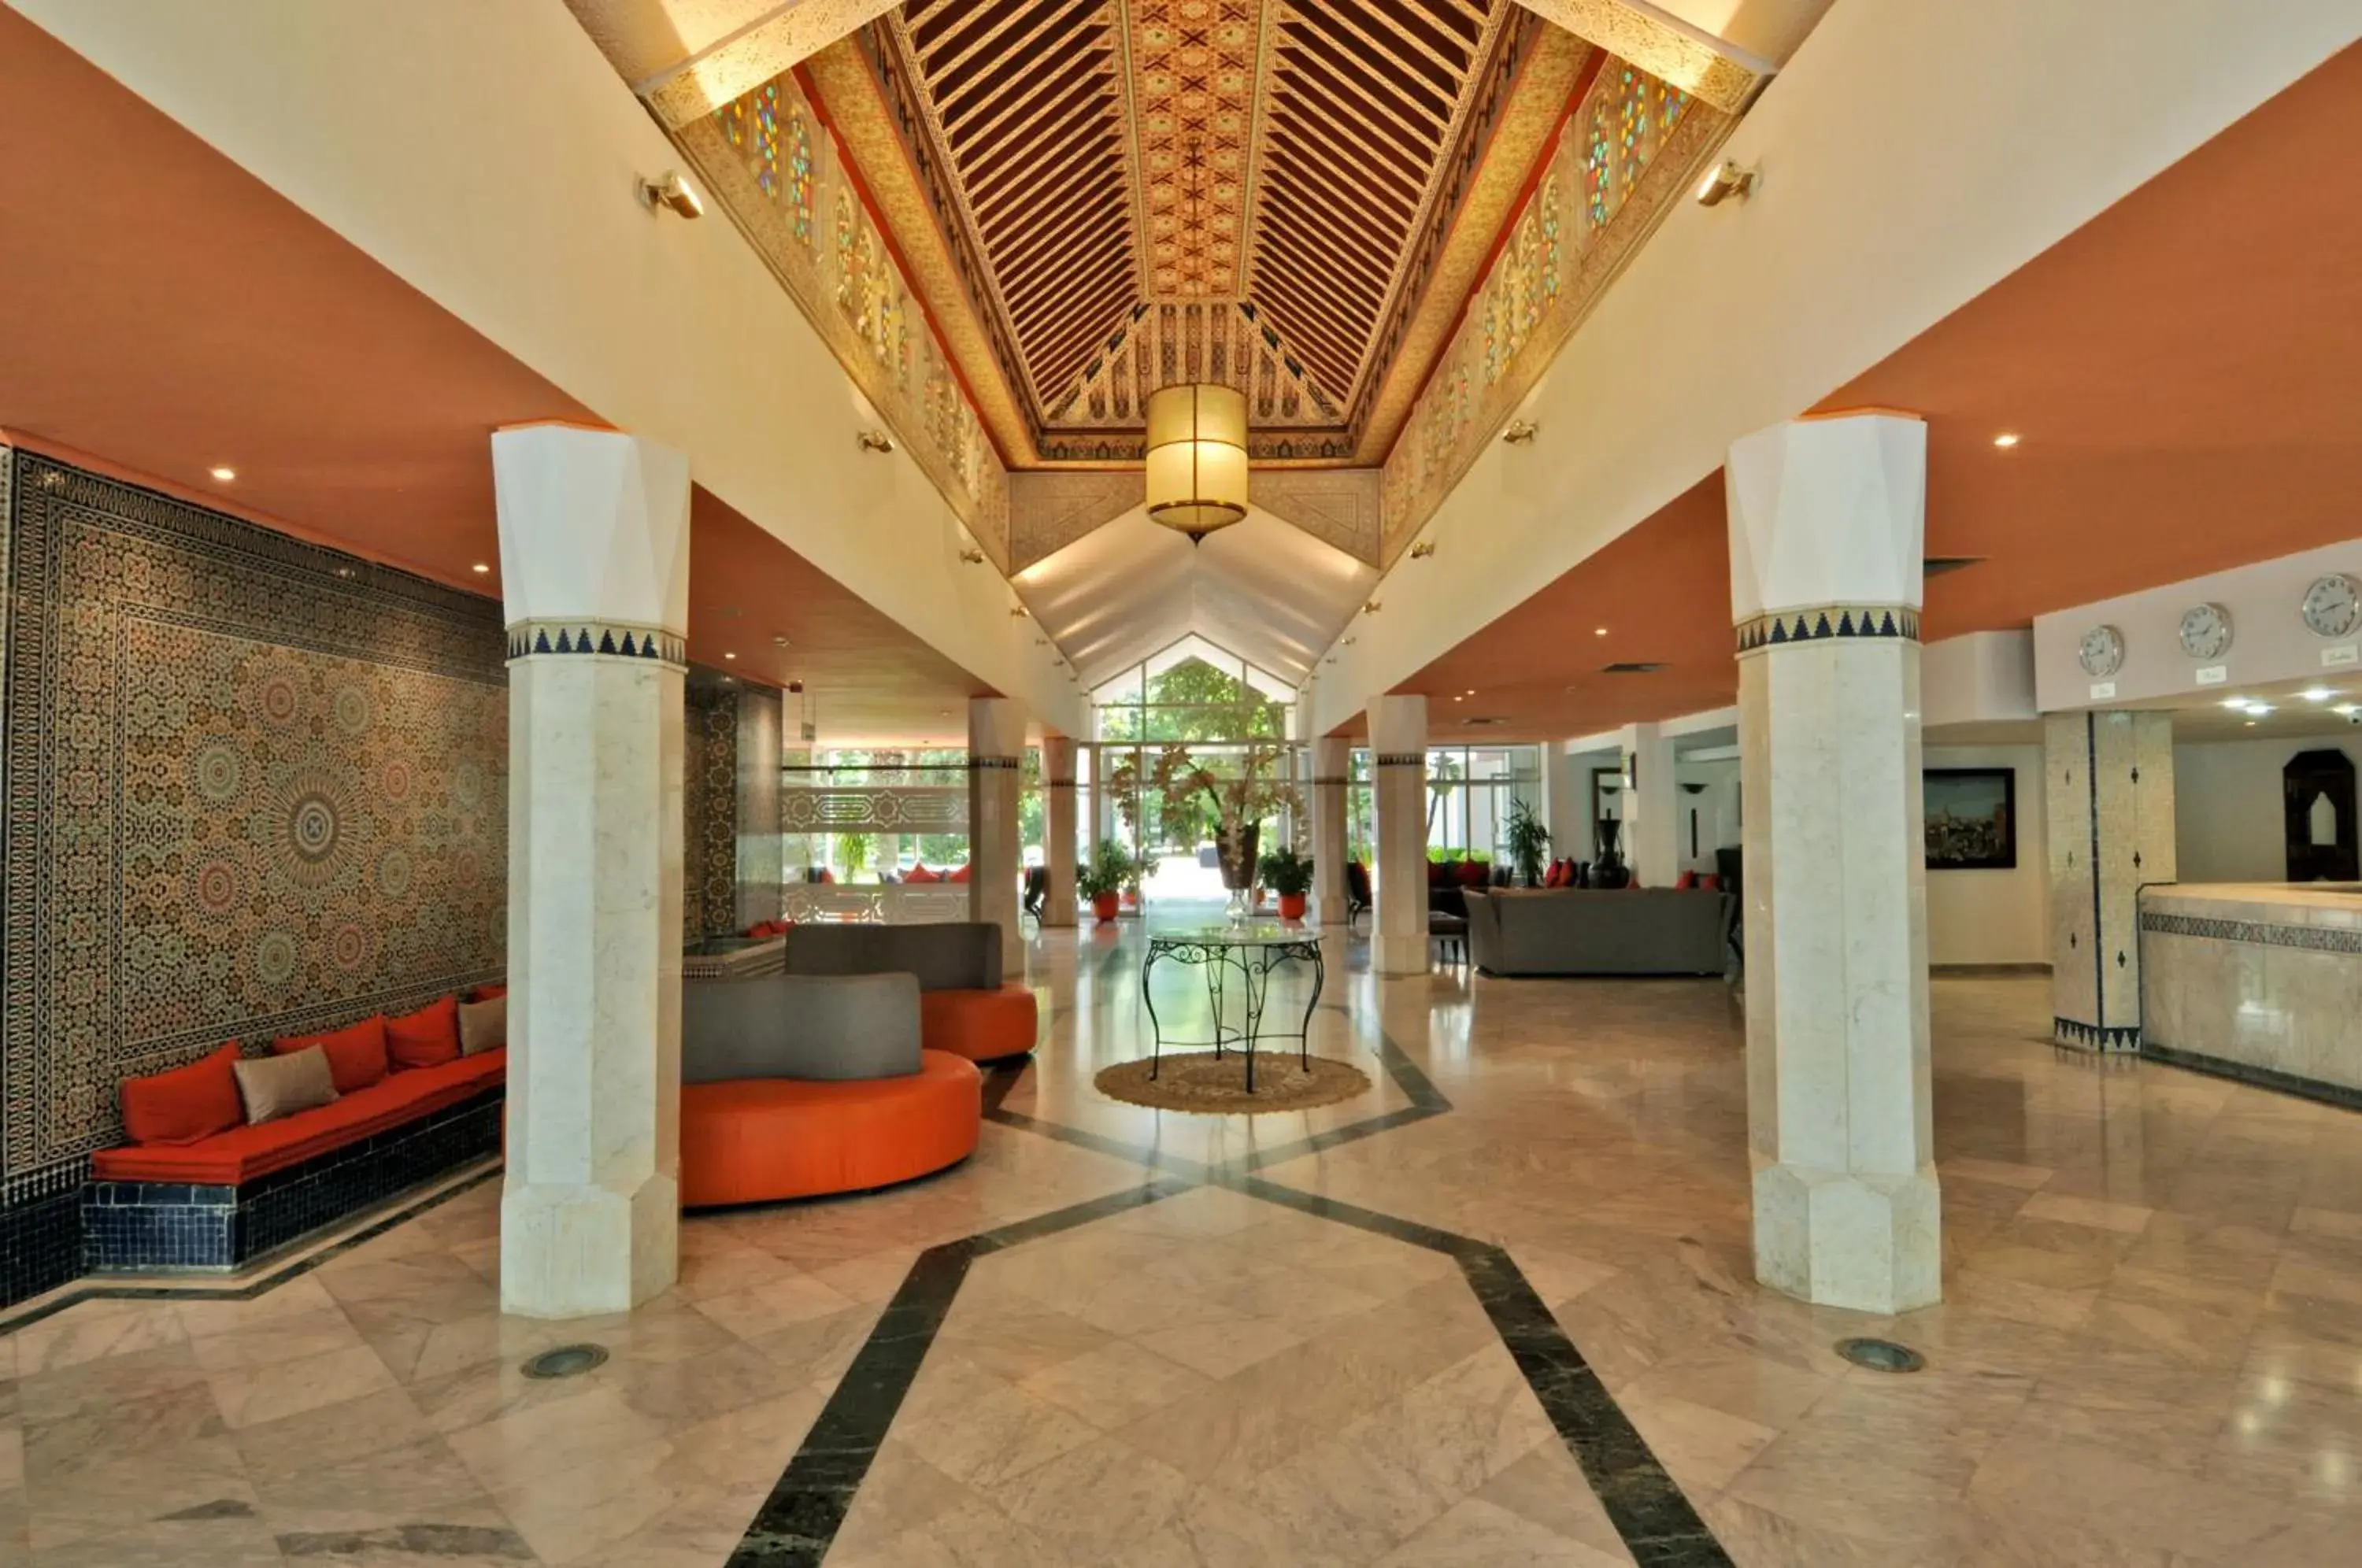 Lobby or reception, Lobby/Reception in Hôtel Volubilis